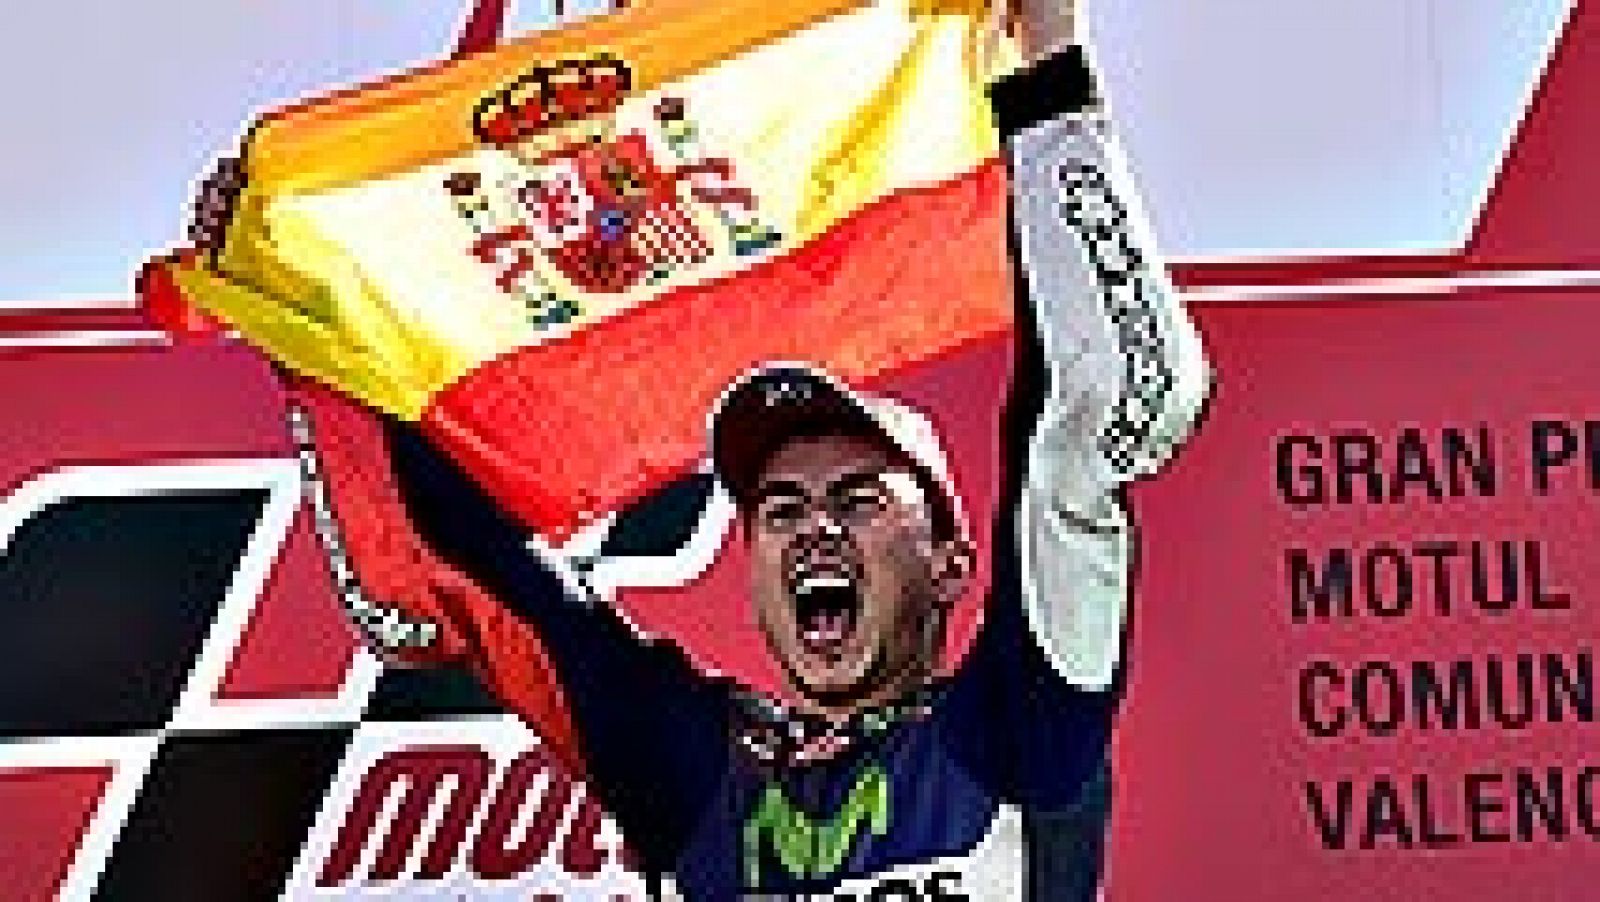 El español Jorge Lorenzo (Yamaha) se ha proclamado por tercera vez campeón mundial de MotoGP al ganar el GP de la Comunidad Valenciana, último del campeonato, mientras que el italiano Valentino Rossi ha terminado cuarto.